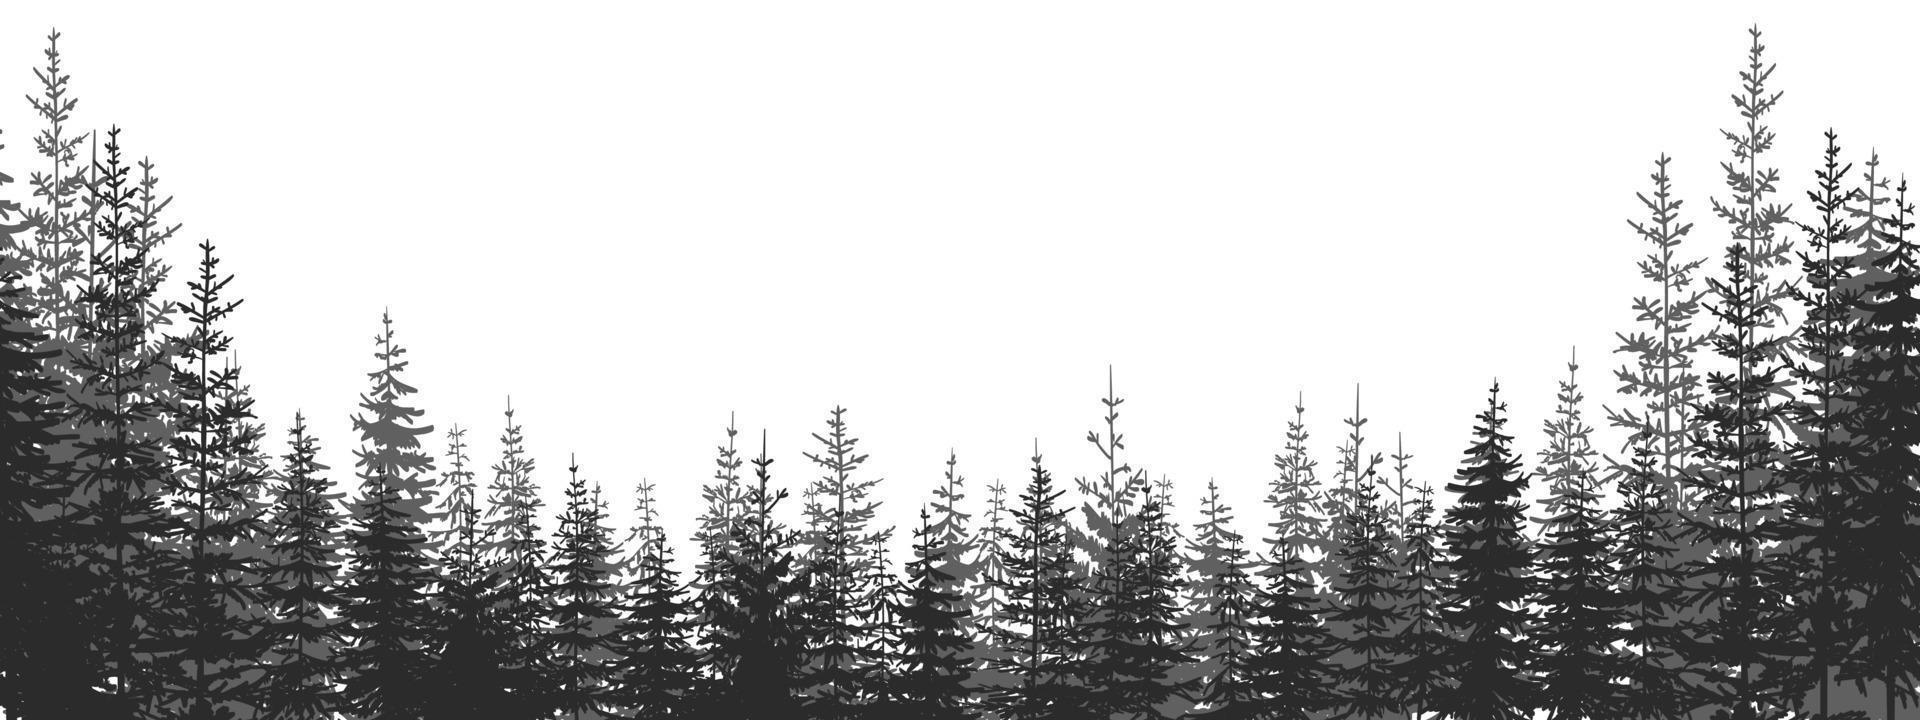 skog. skog landskap med svart och vit silhuetter av träd. vektor illustration